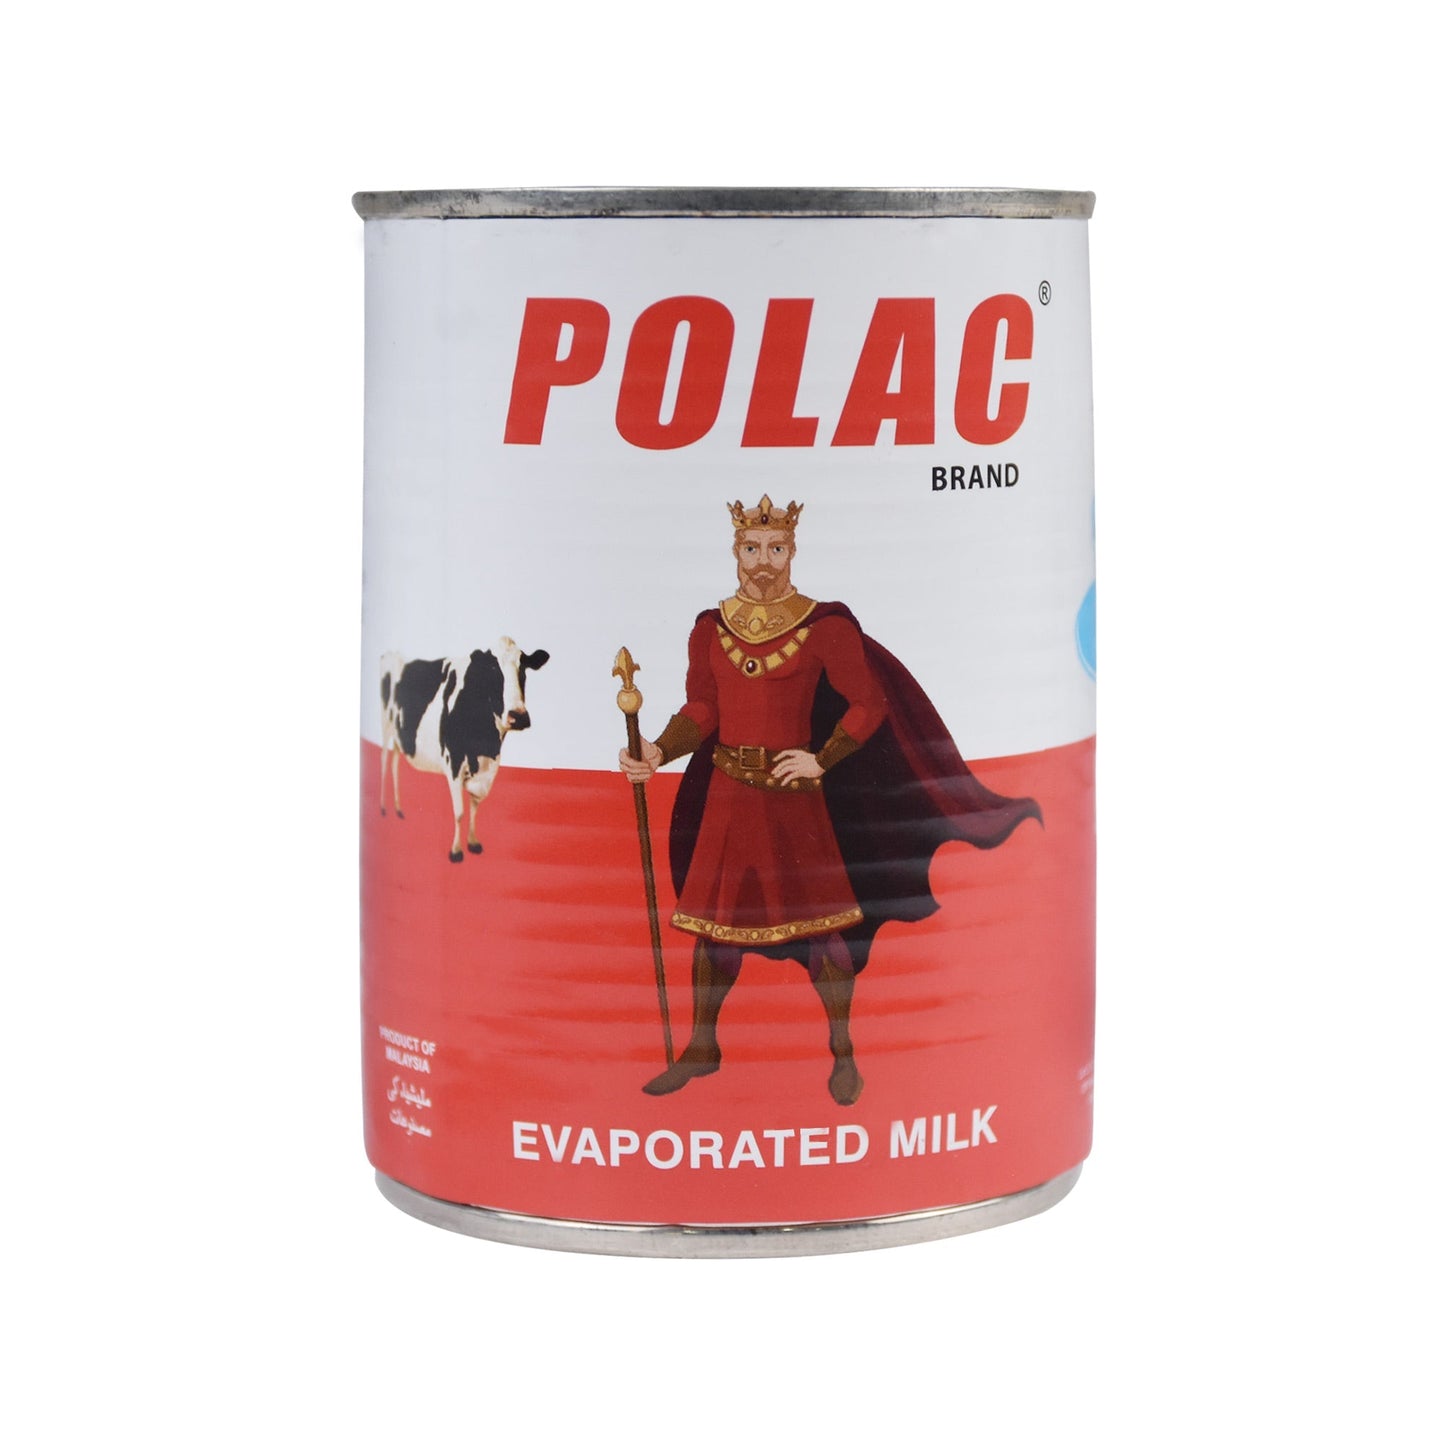 Polac Evaporated Milk 390g